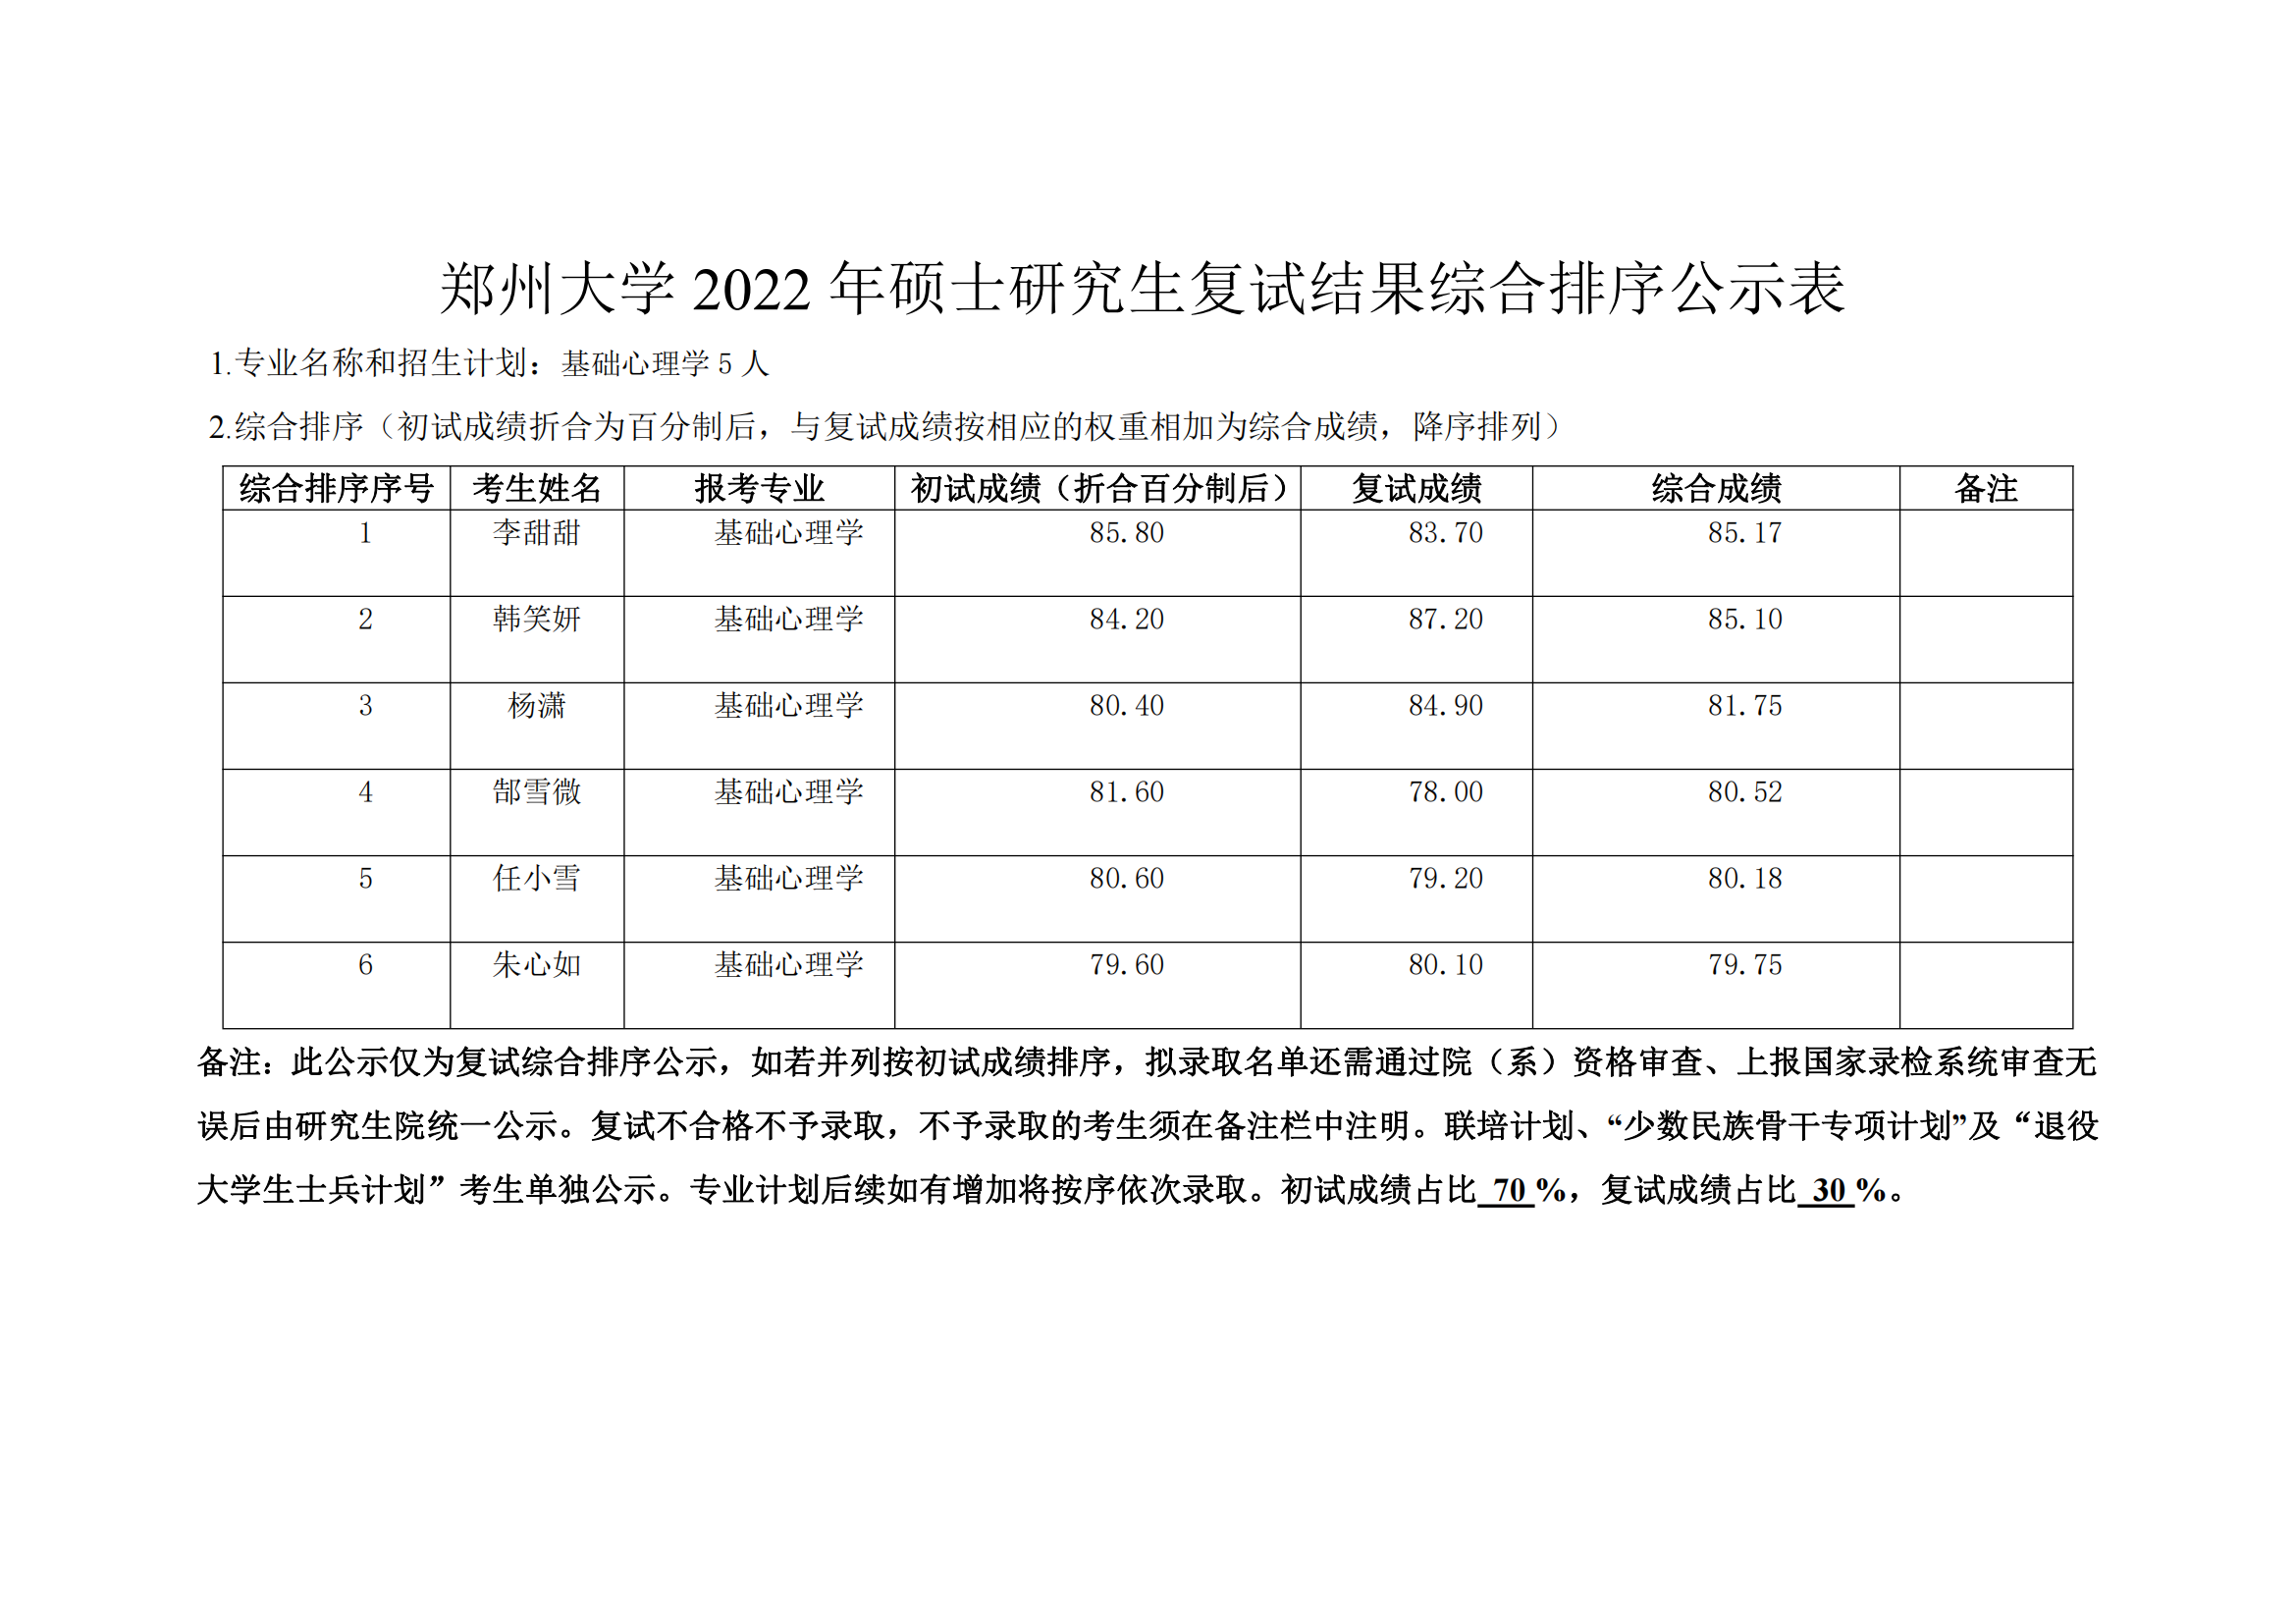 郑州大学教育学院2022年硕士研究生复试结果综合排序公示表_02.png